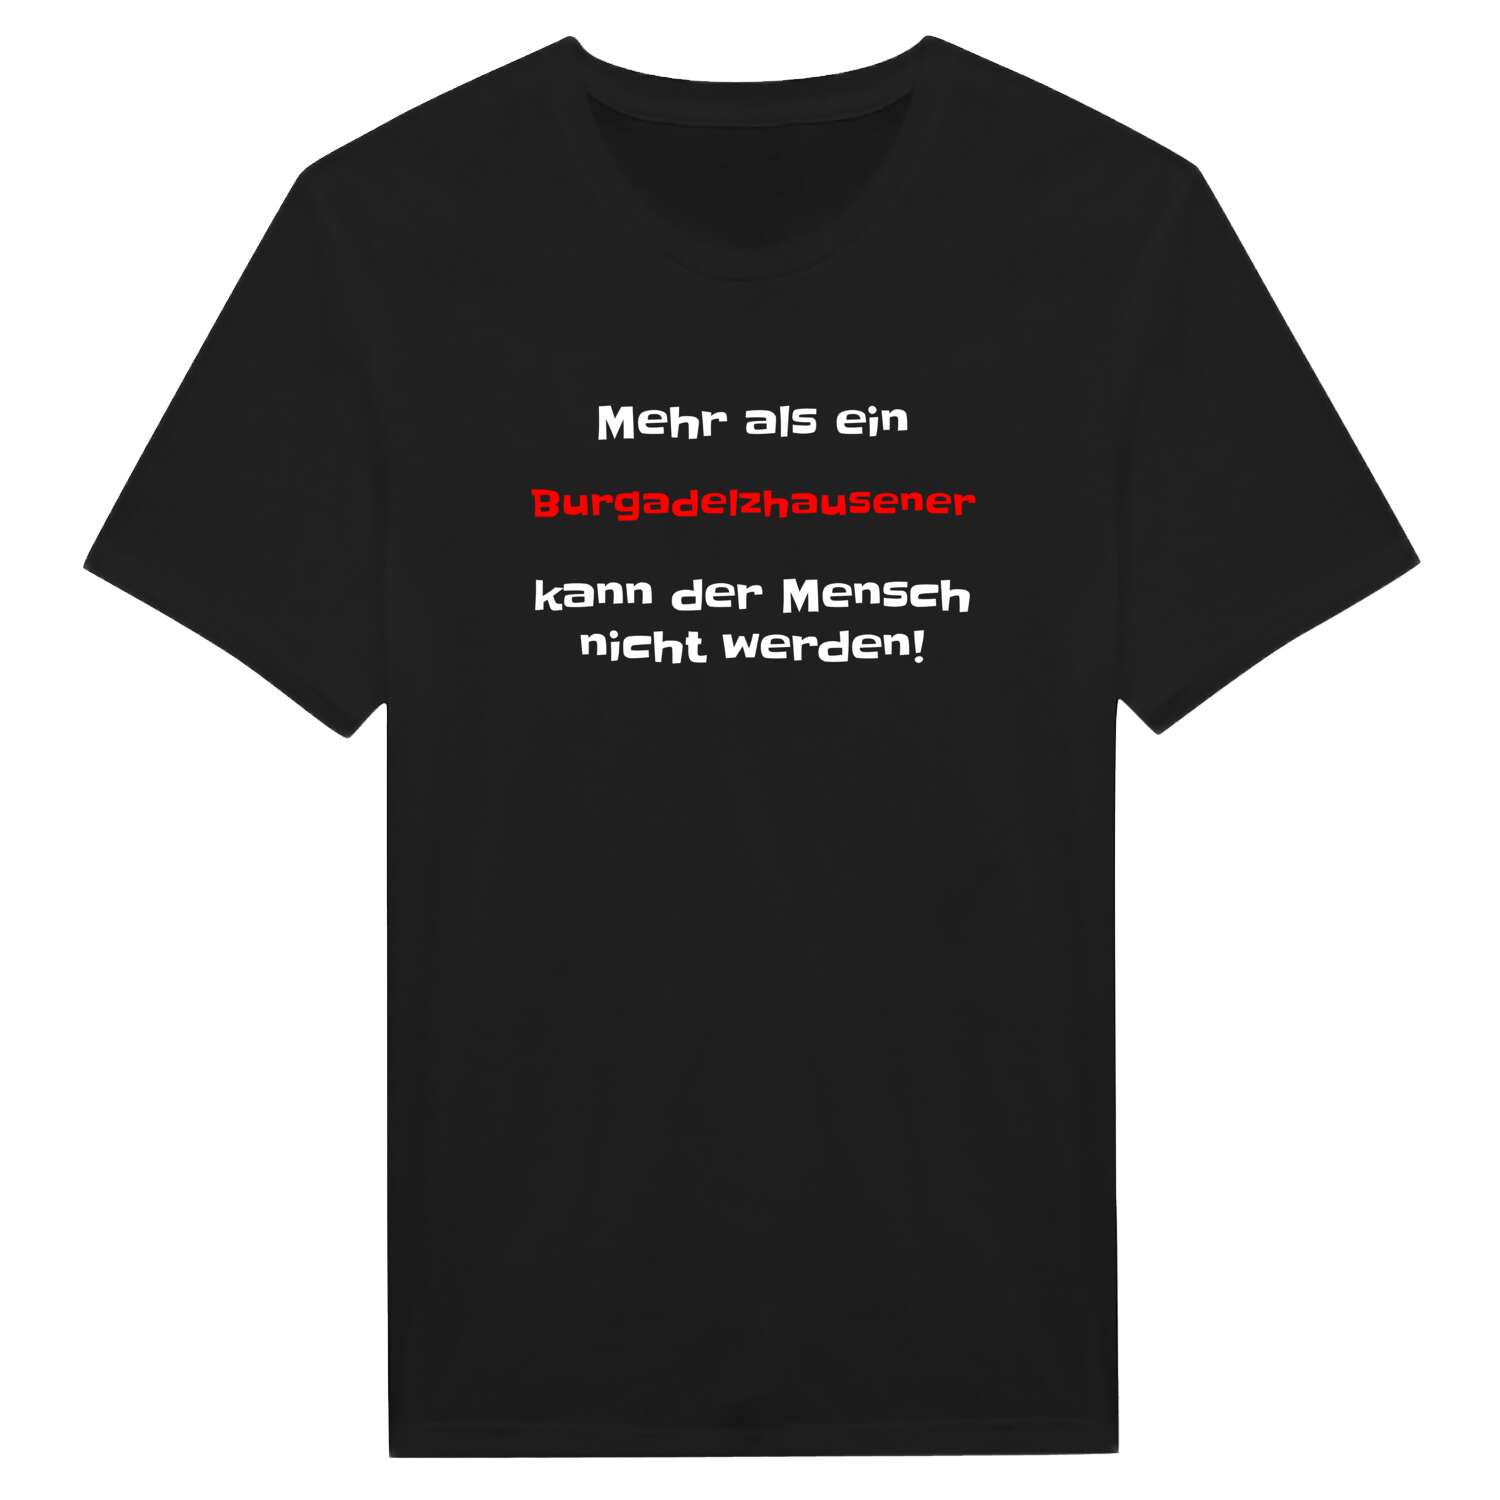 Burgadelzhausen T-Shirt »Mehr als ein«